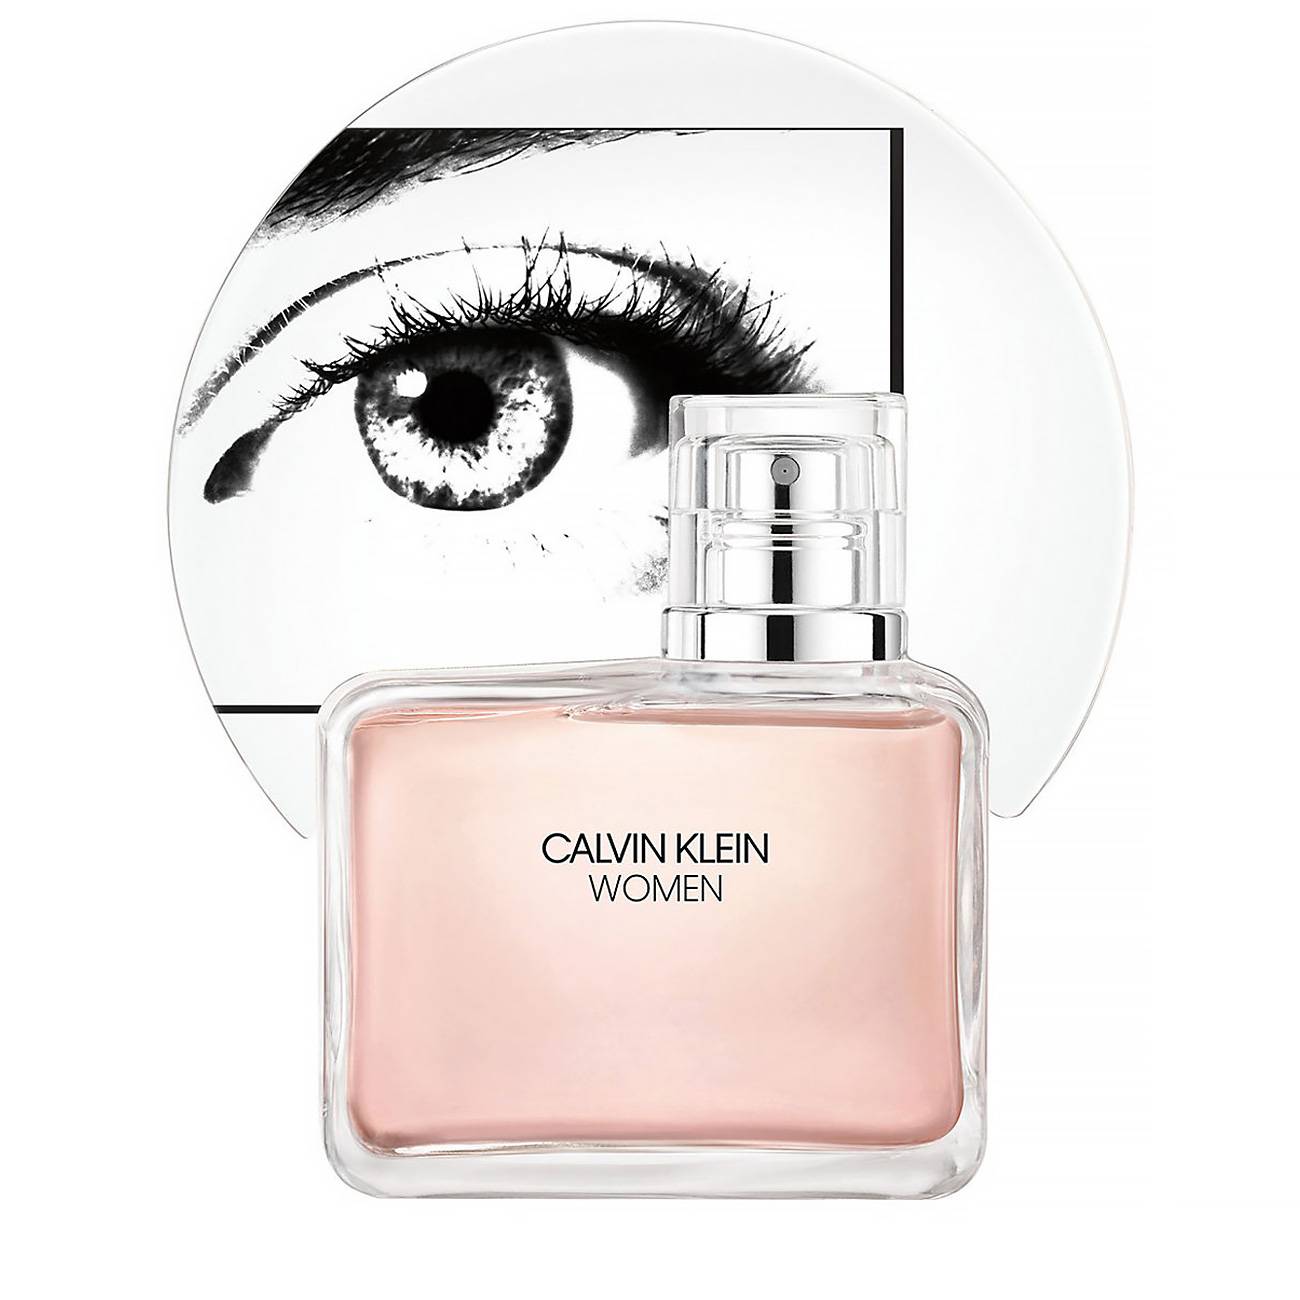 Apa de Parfum Calvin Klein WOMEN 100ml cu comanda online